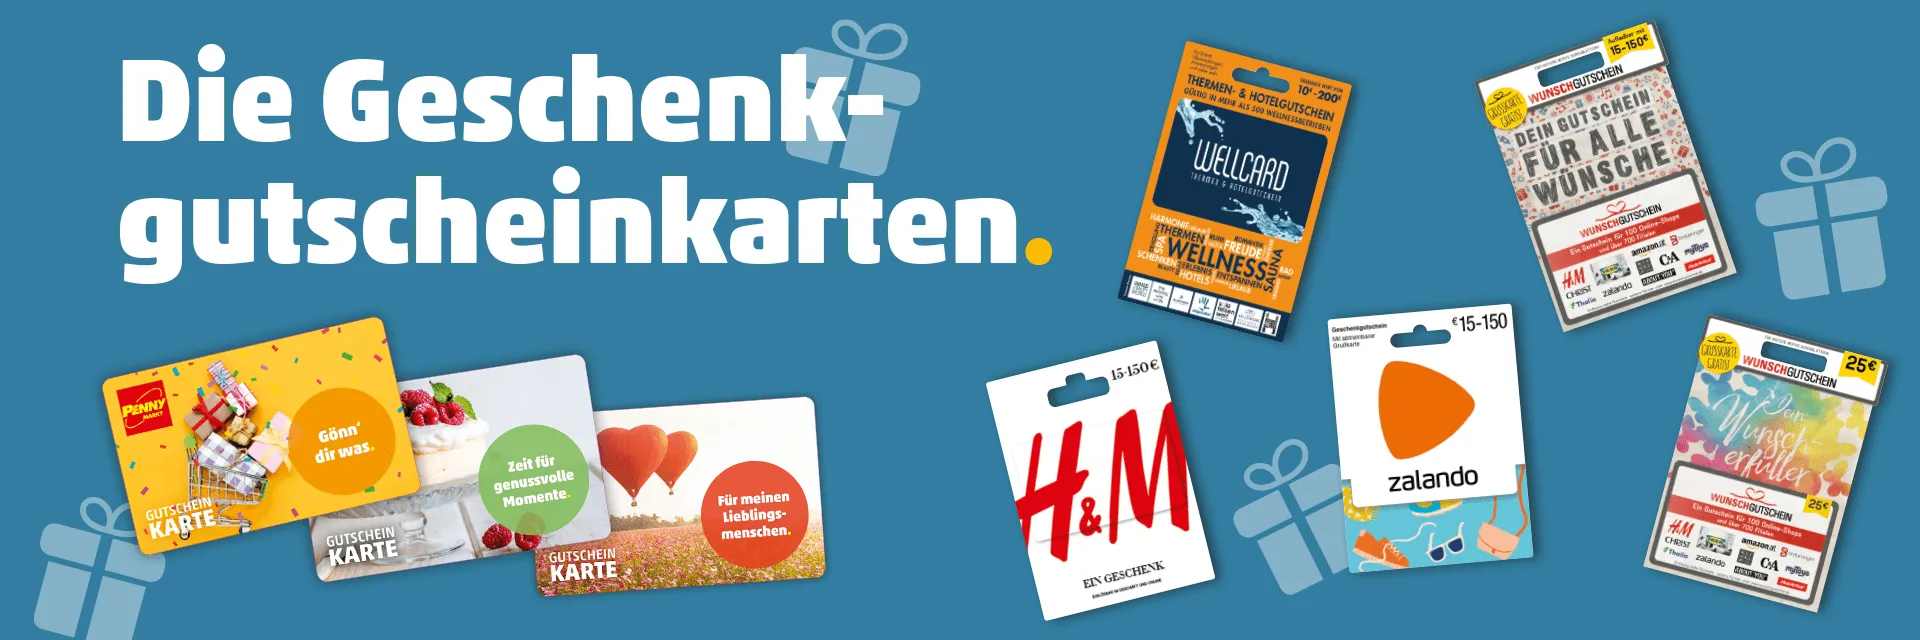 Gutscheine & Wertkarten zum Markt Österreich PENNY Verschenken 